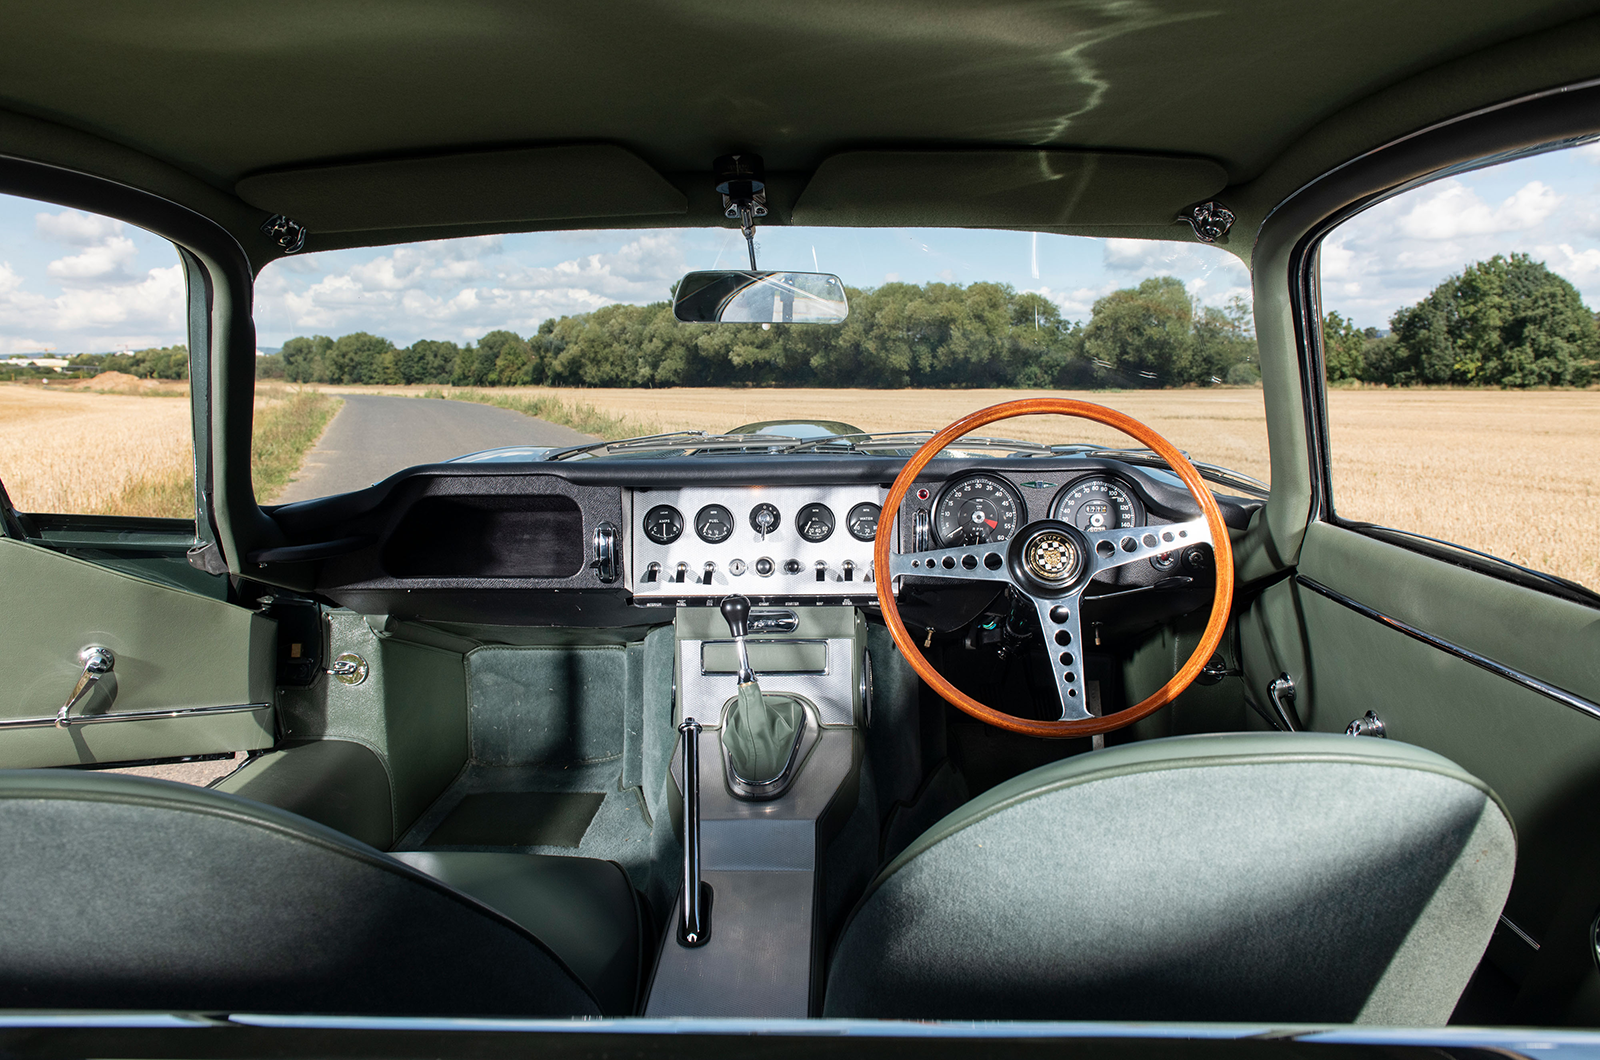 Classic & Sports Car – Ex-works Jaguar E-type set for London sale